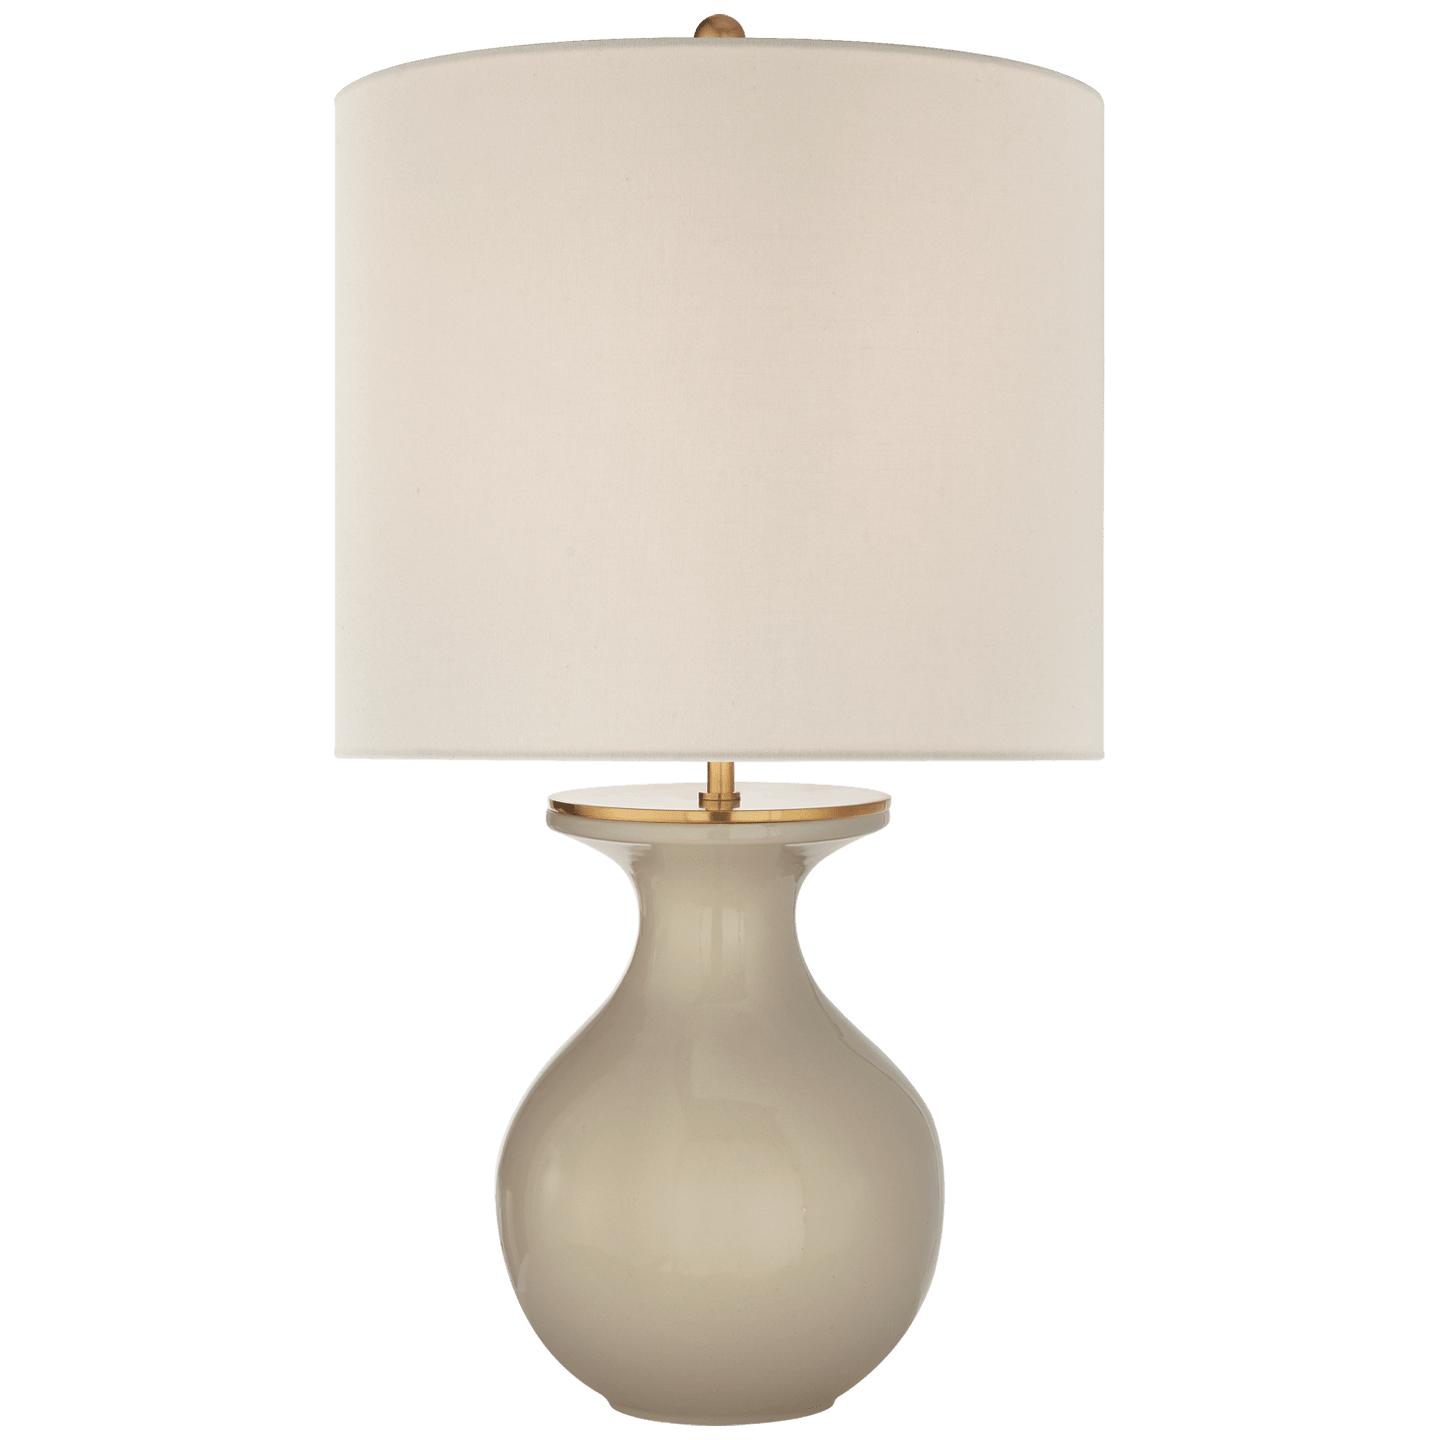 Купить Настольная лампа Albie Small Desk Lamp в интернет-магазине roooms.ru